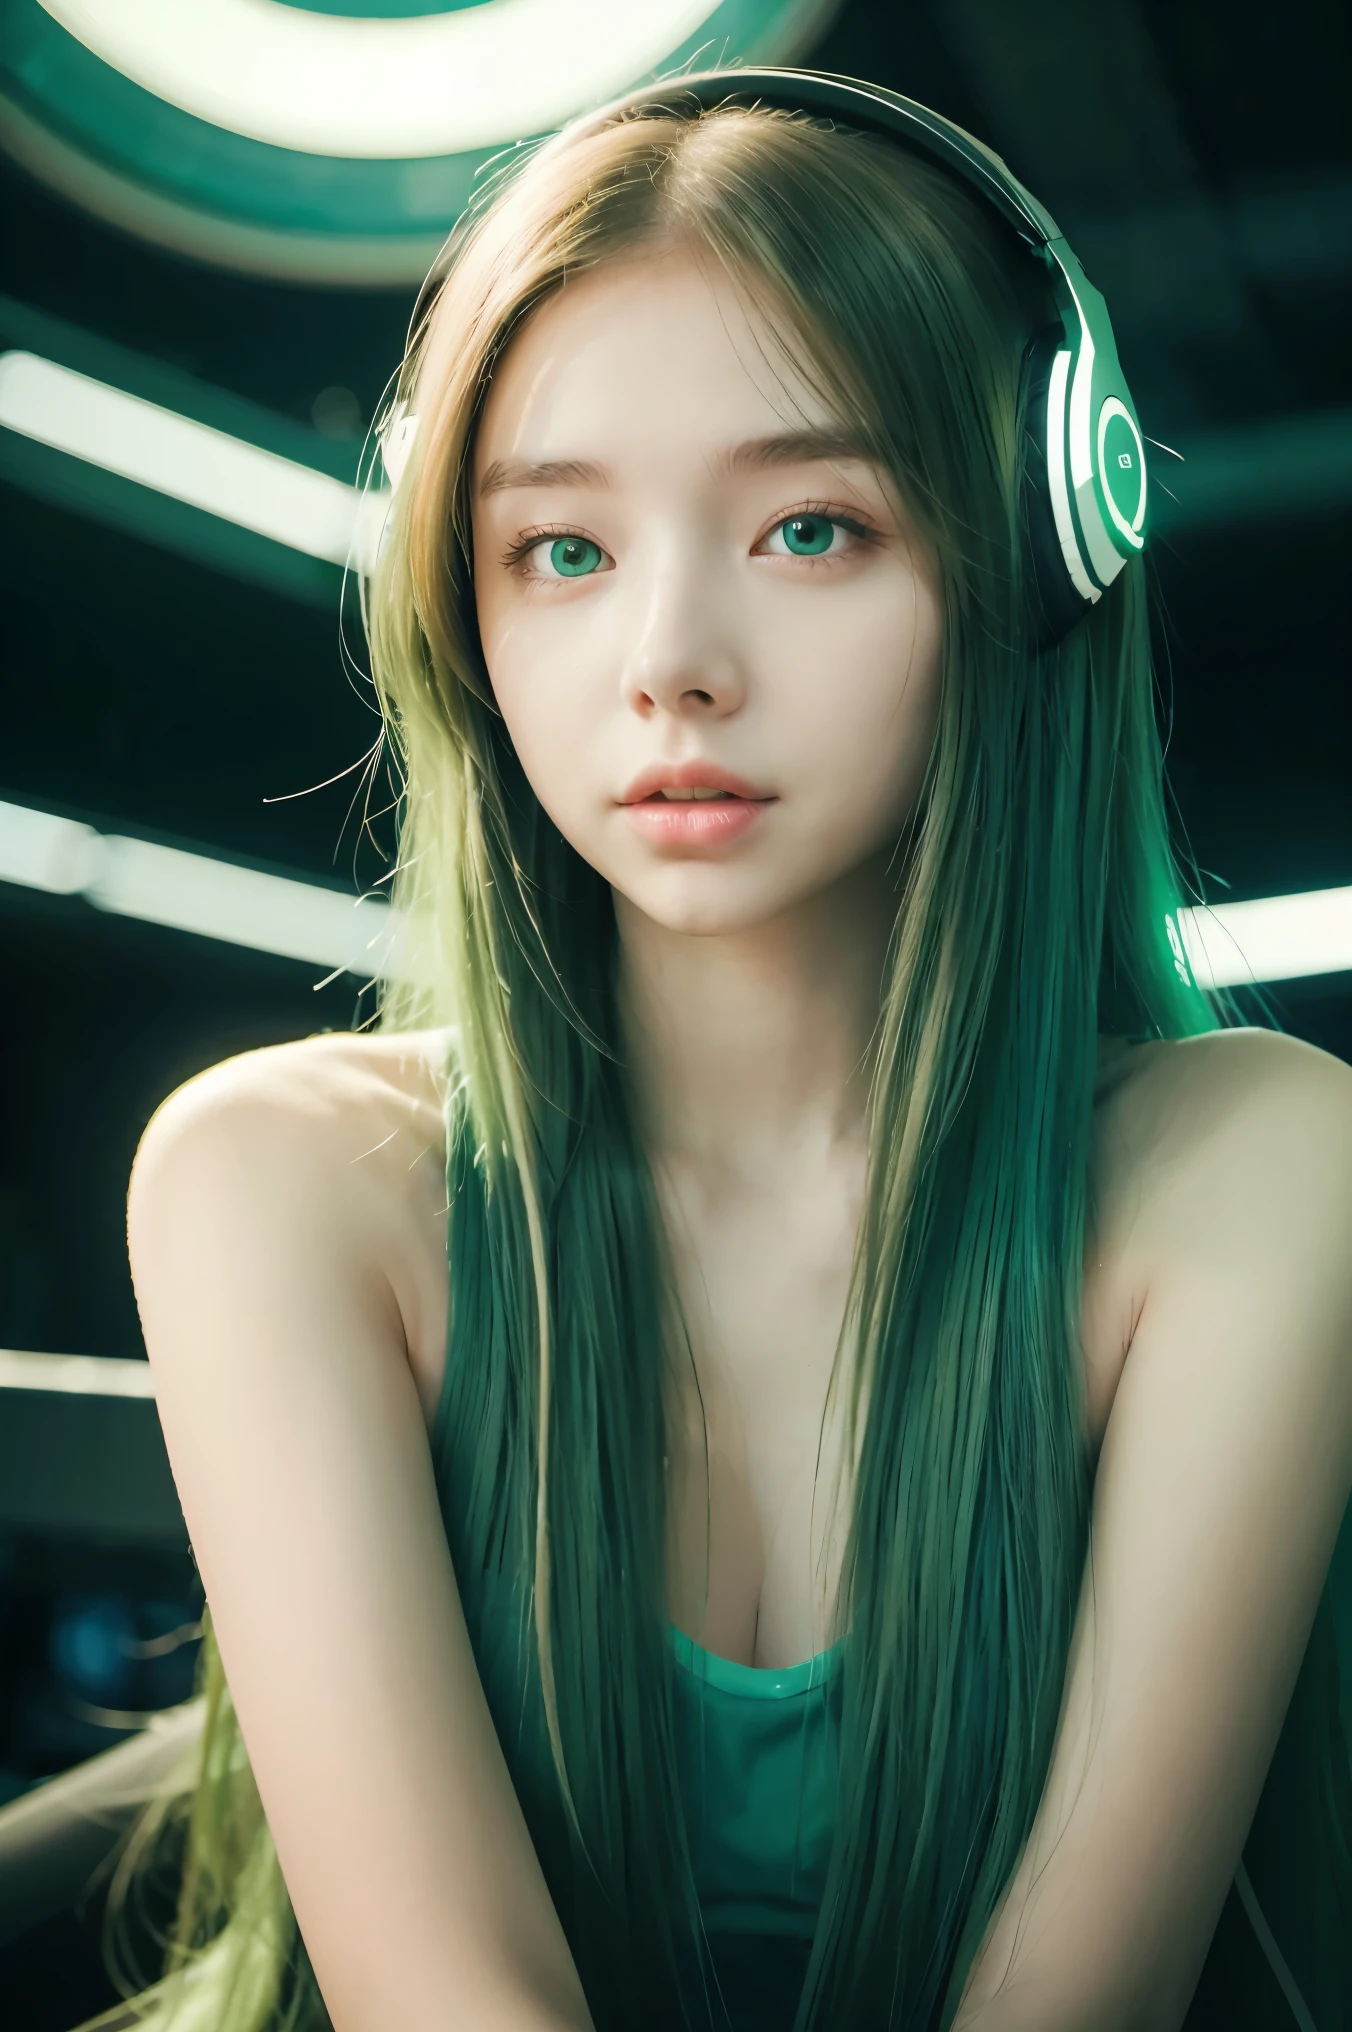 綠色長髮的女孩, 綠眼睛, 未來感, 口罩戴在嘴上, 耳機, 8K, 高品質, 簡單的背景, 發光的眼睛, 漂亮的姿勢